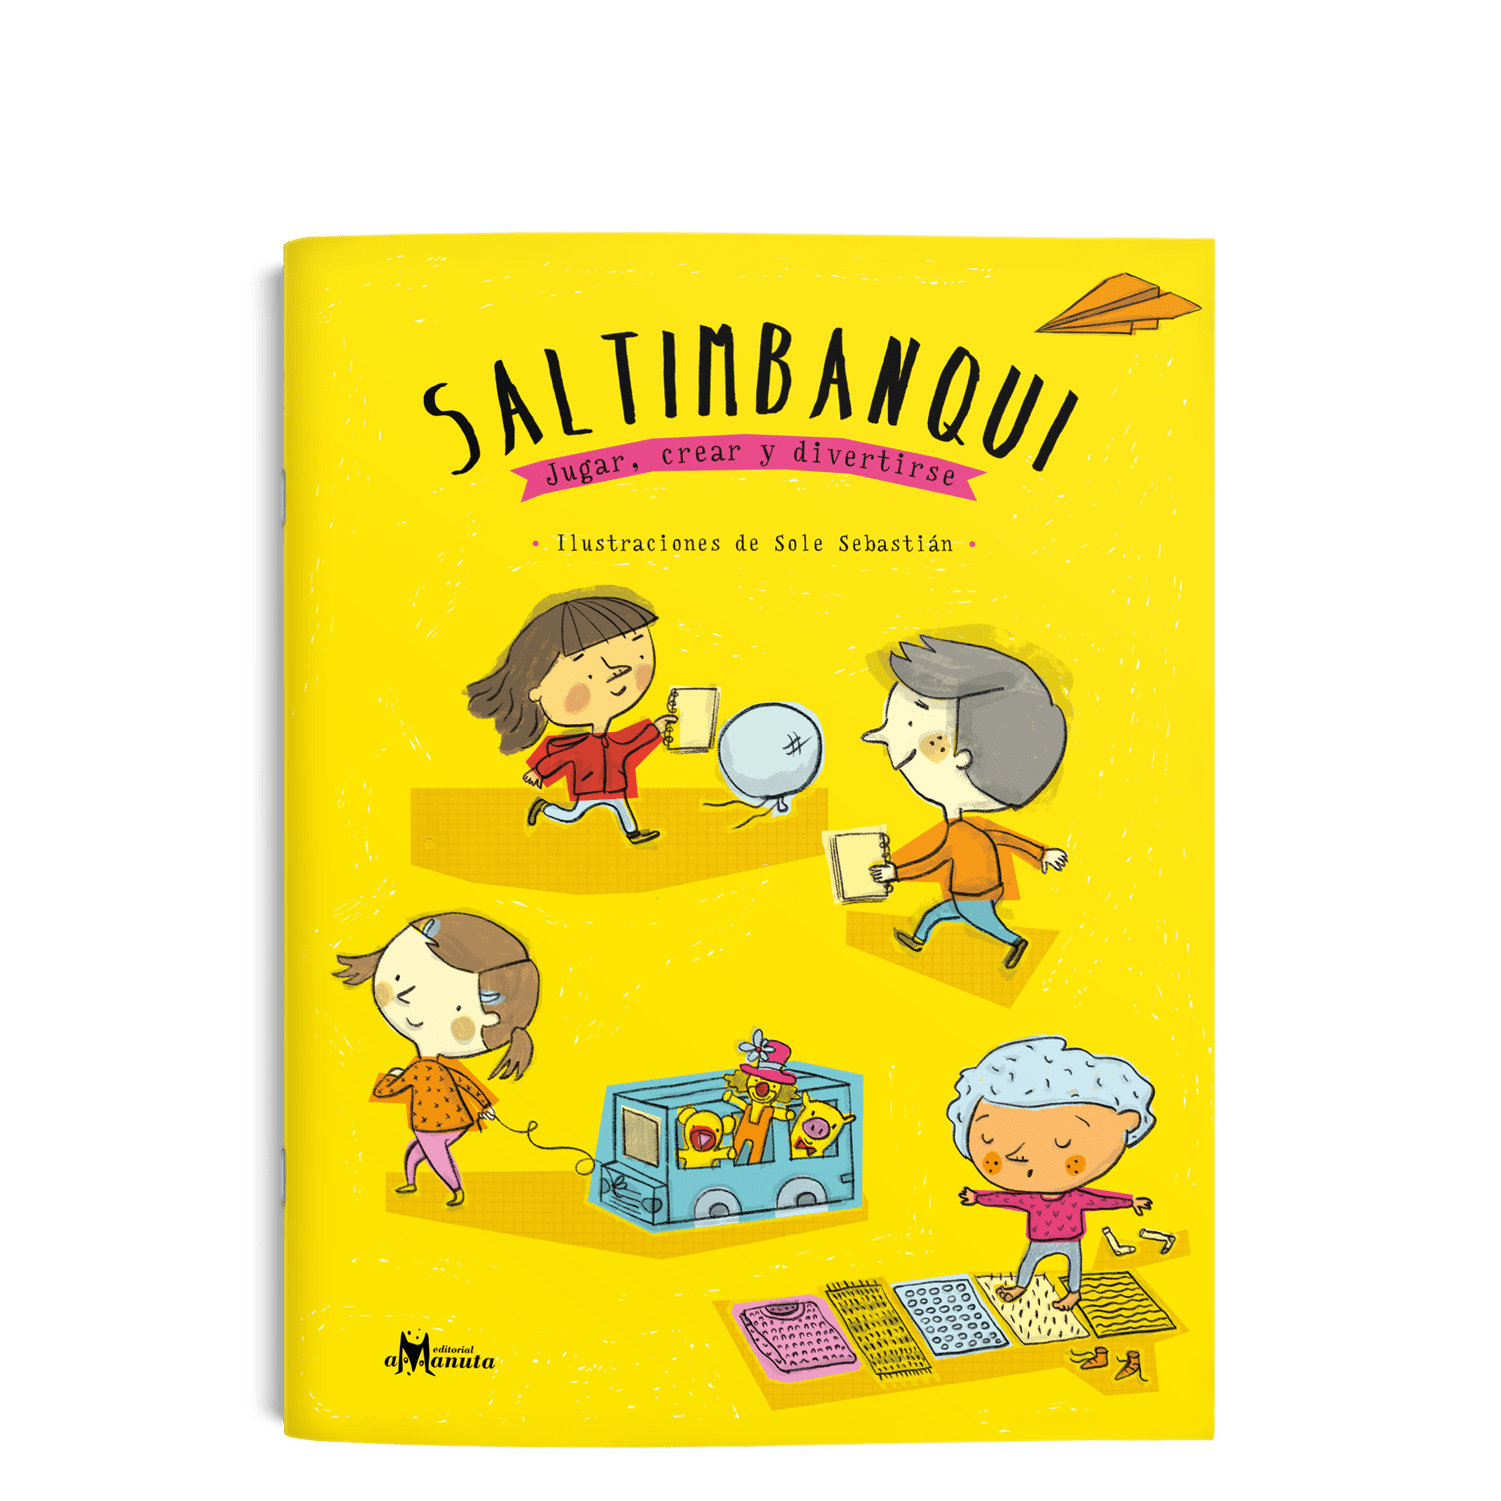 Saltimbanqui<br>Jugar, crear y divertirse